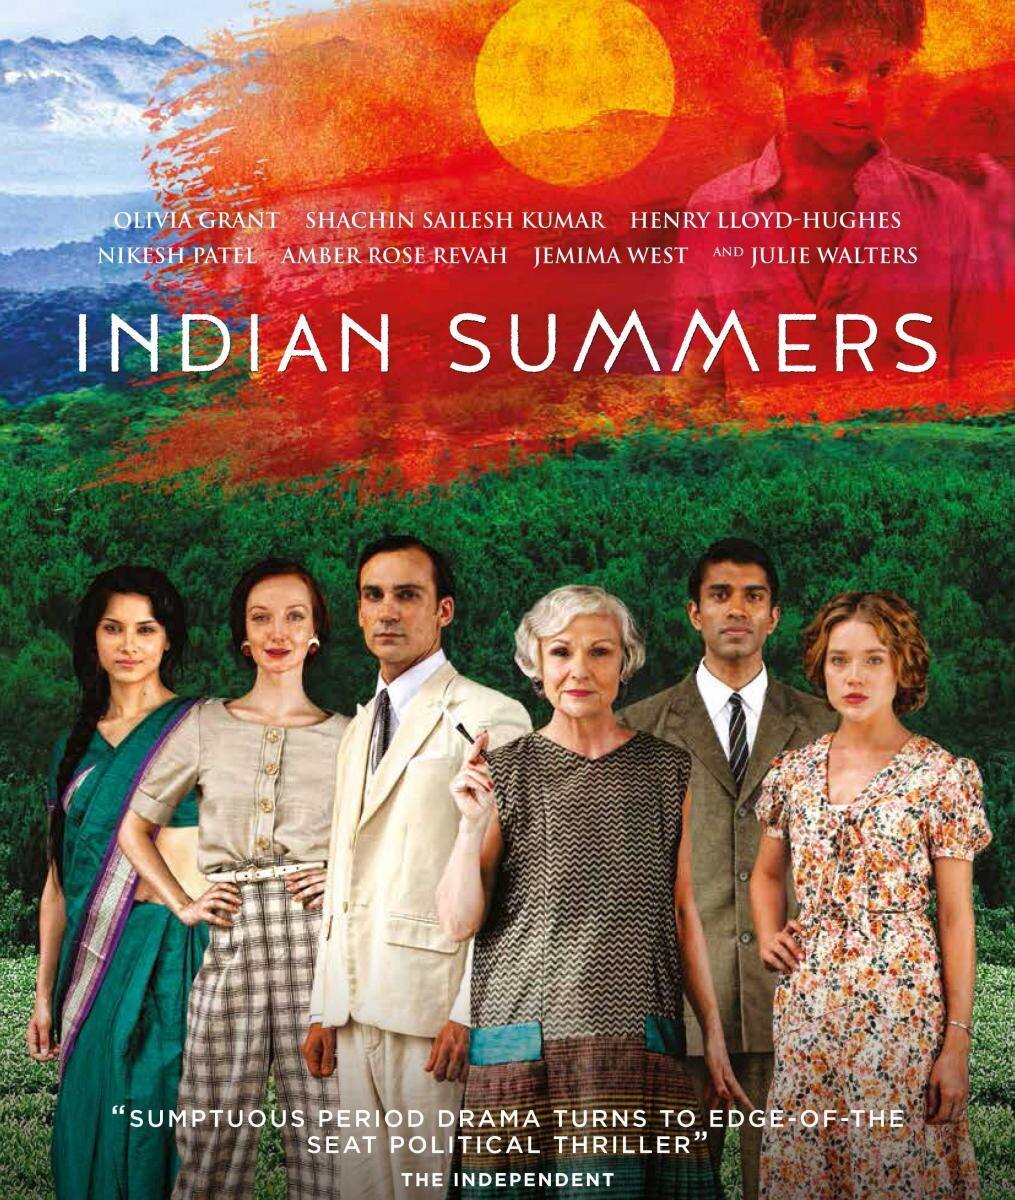 Британский сериал "Индийское лето" (2015 – 2016) - всего два коротких сезона. 1930-е годы, колониальная Индия, британское высшее (местное) общество. Платья, шляпки, машины плюс индийская экзотика.